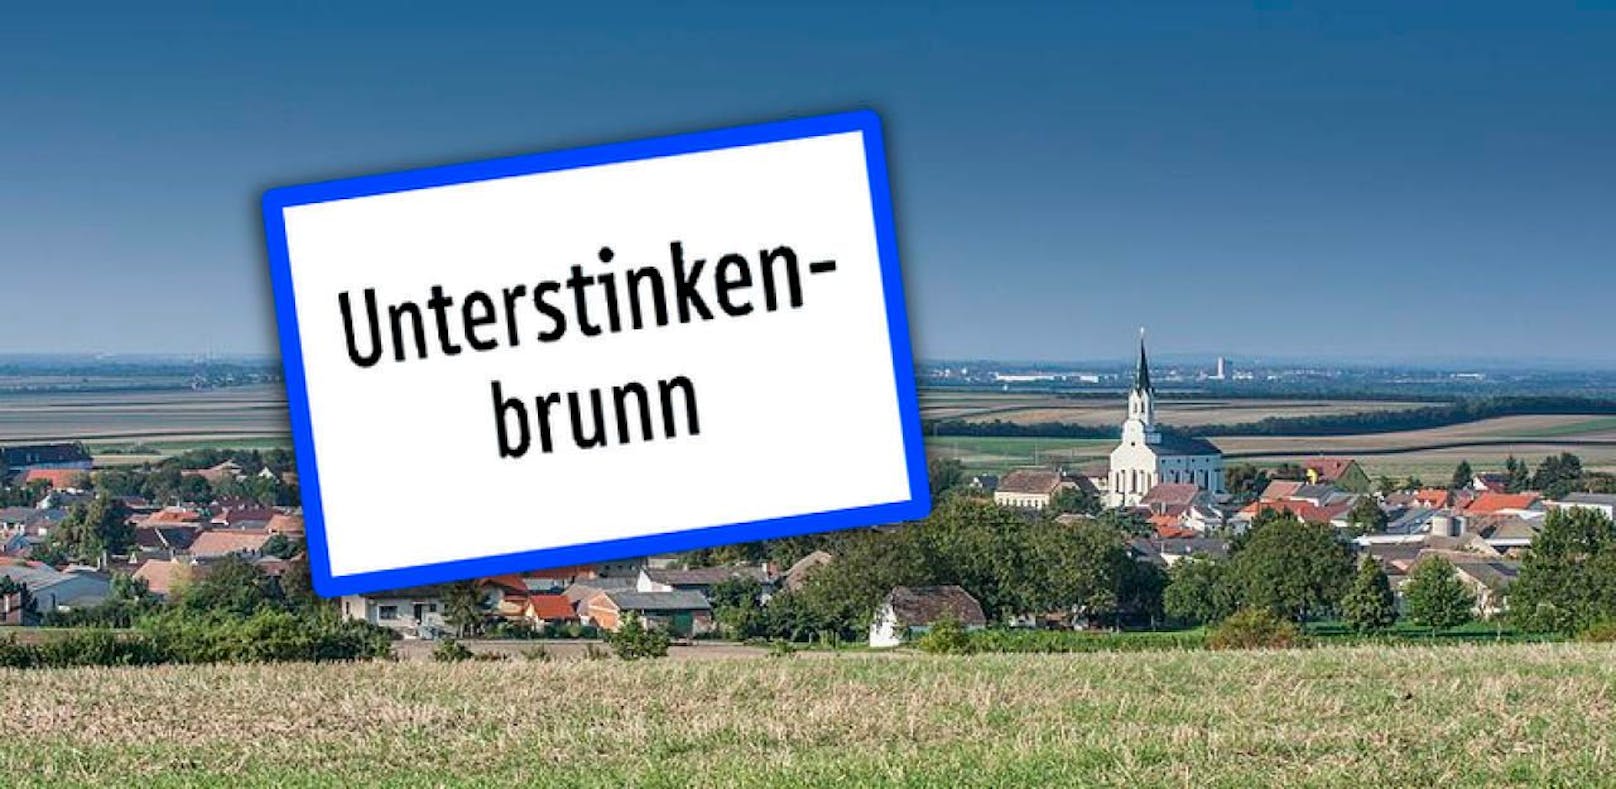 Unterstinkenbrunn-Ortstafeln gestohlen